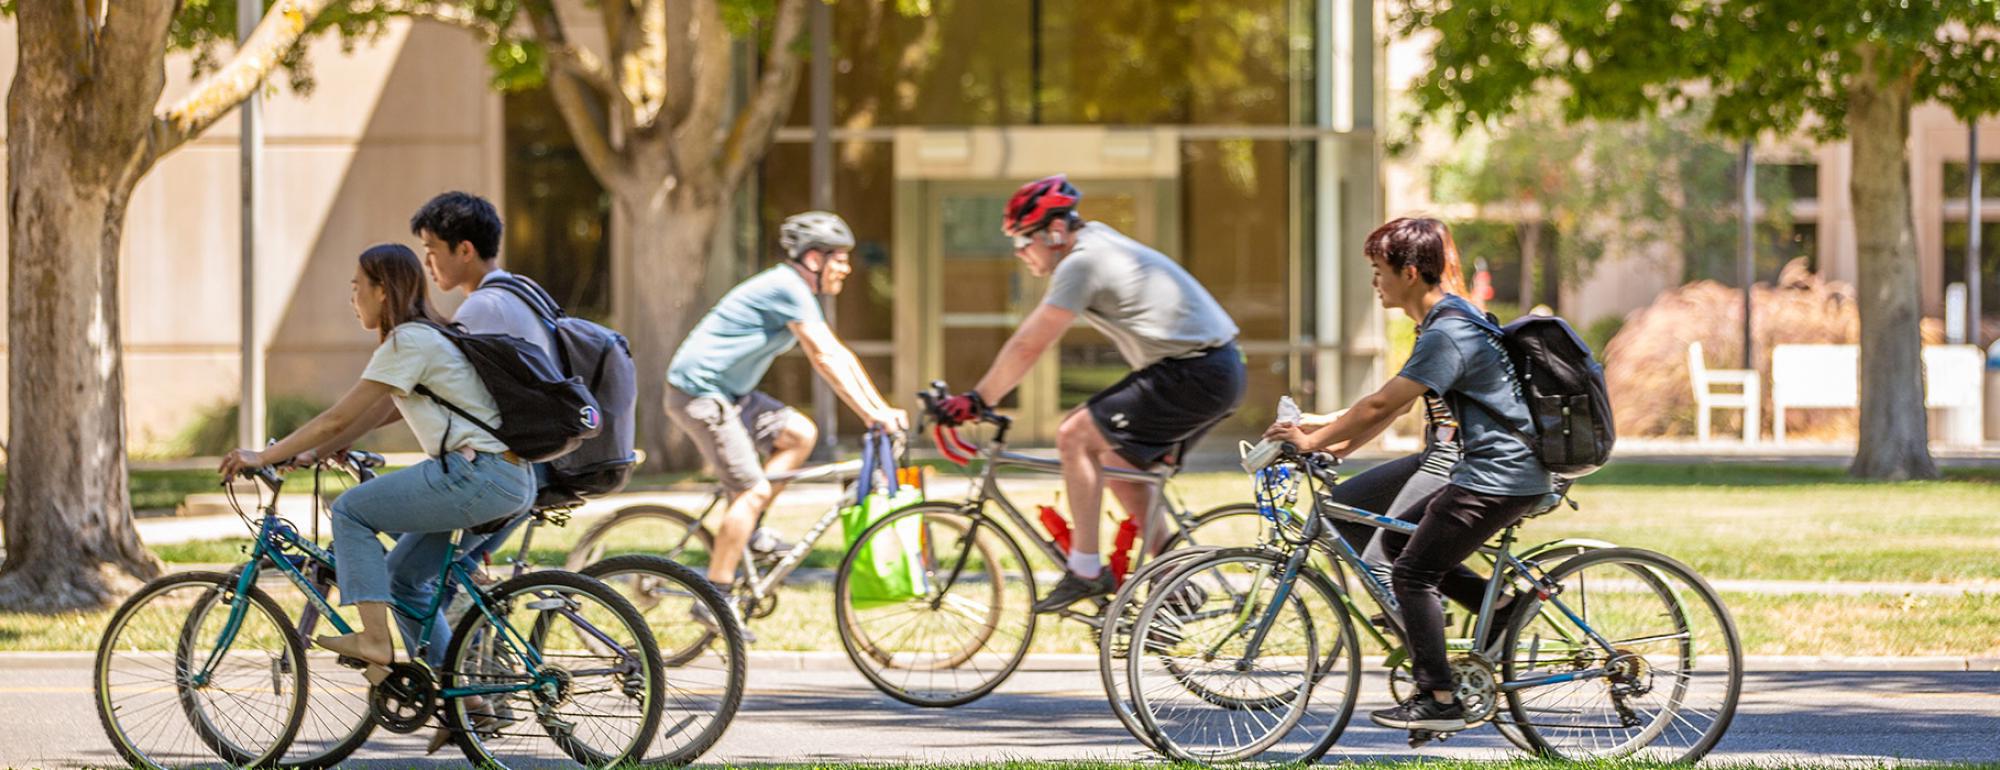 学生们在院子前骑自行车